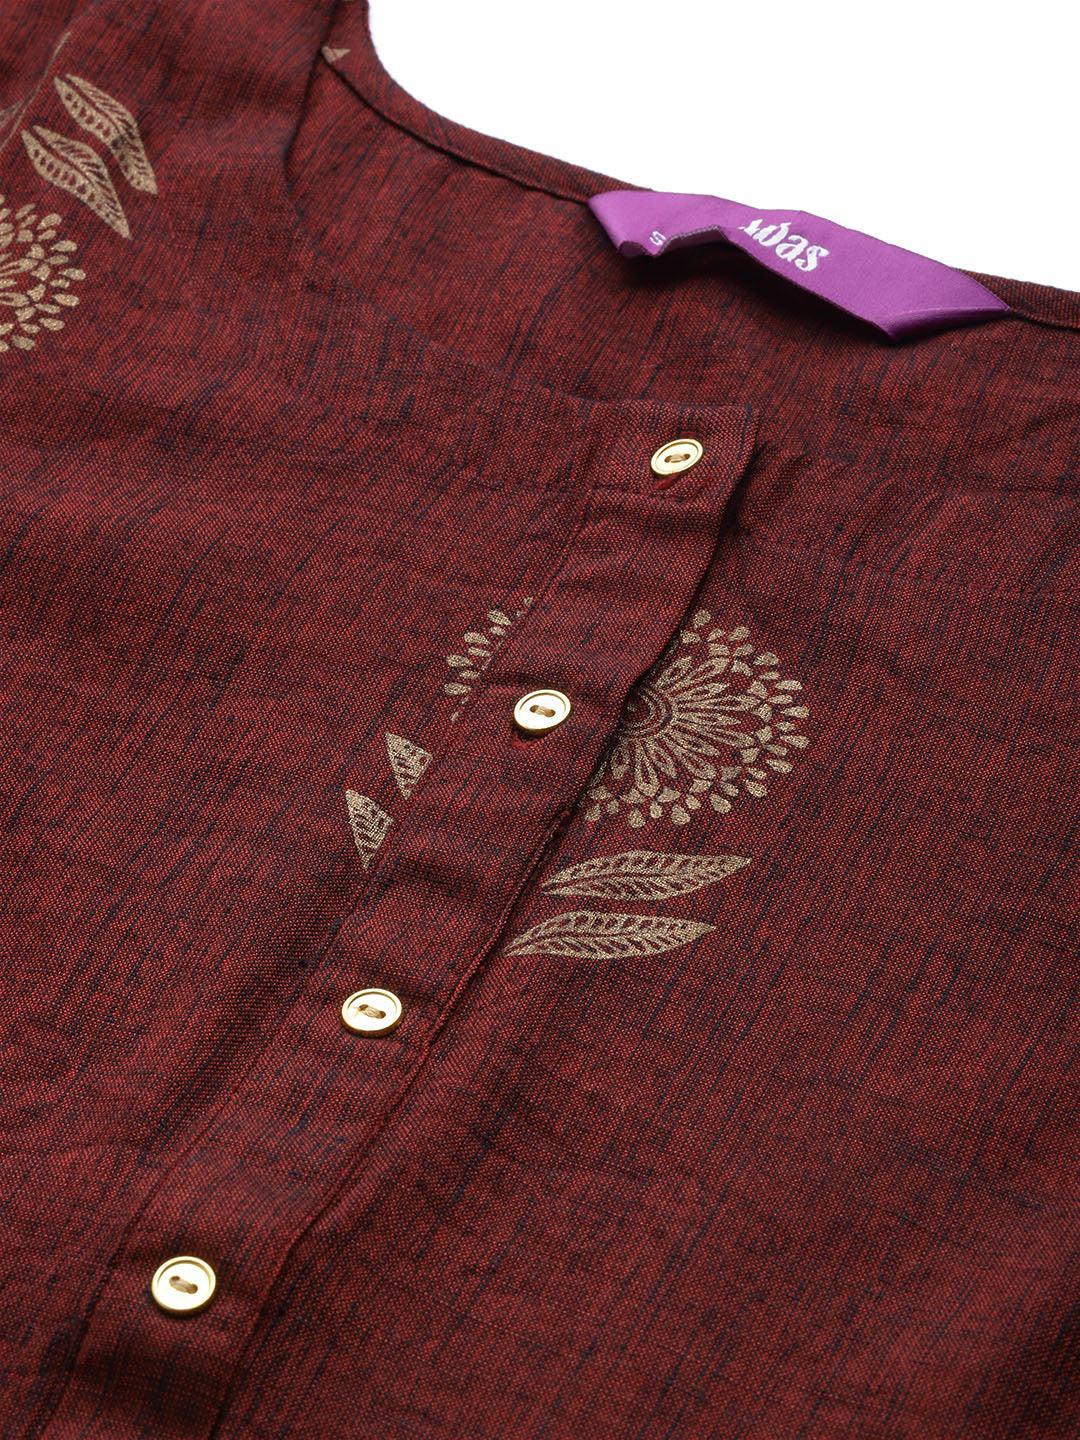 Maroon Printed Chanderi Silk Suit Set - ShopLibas